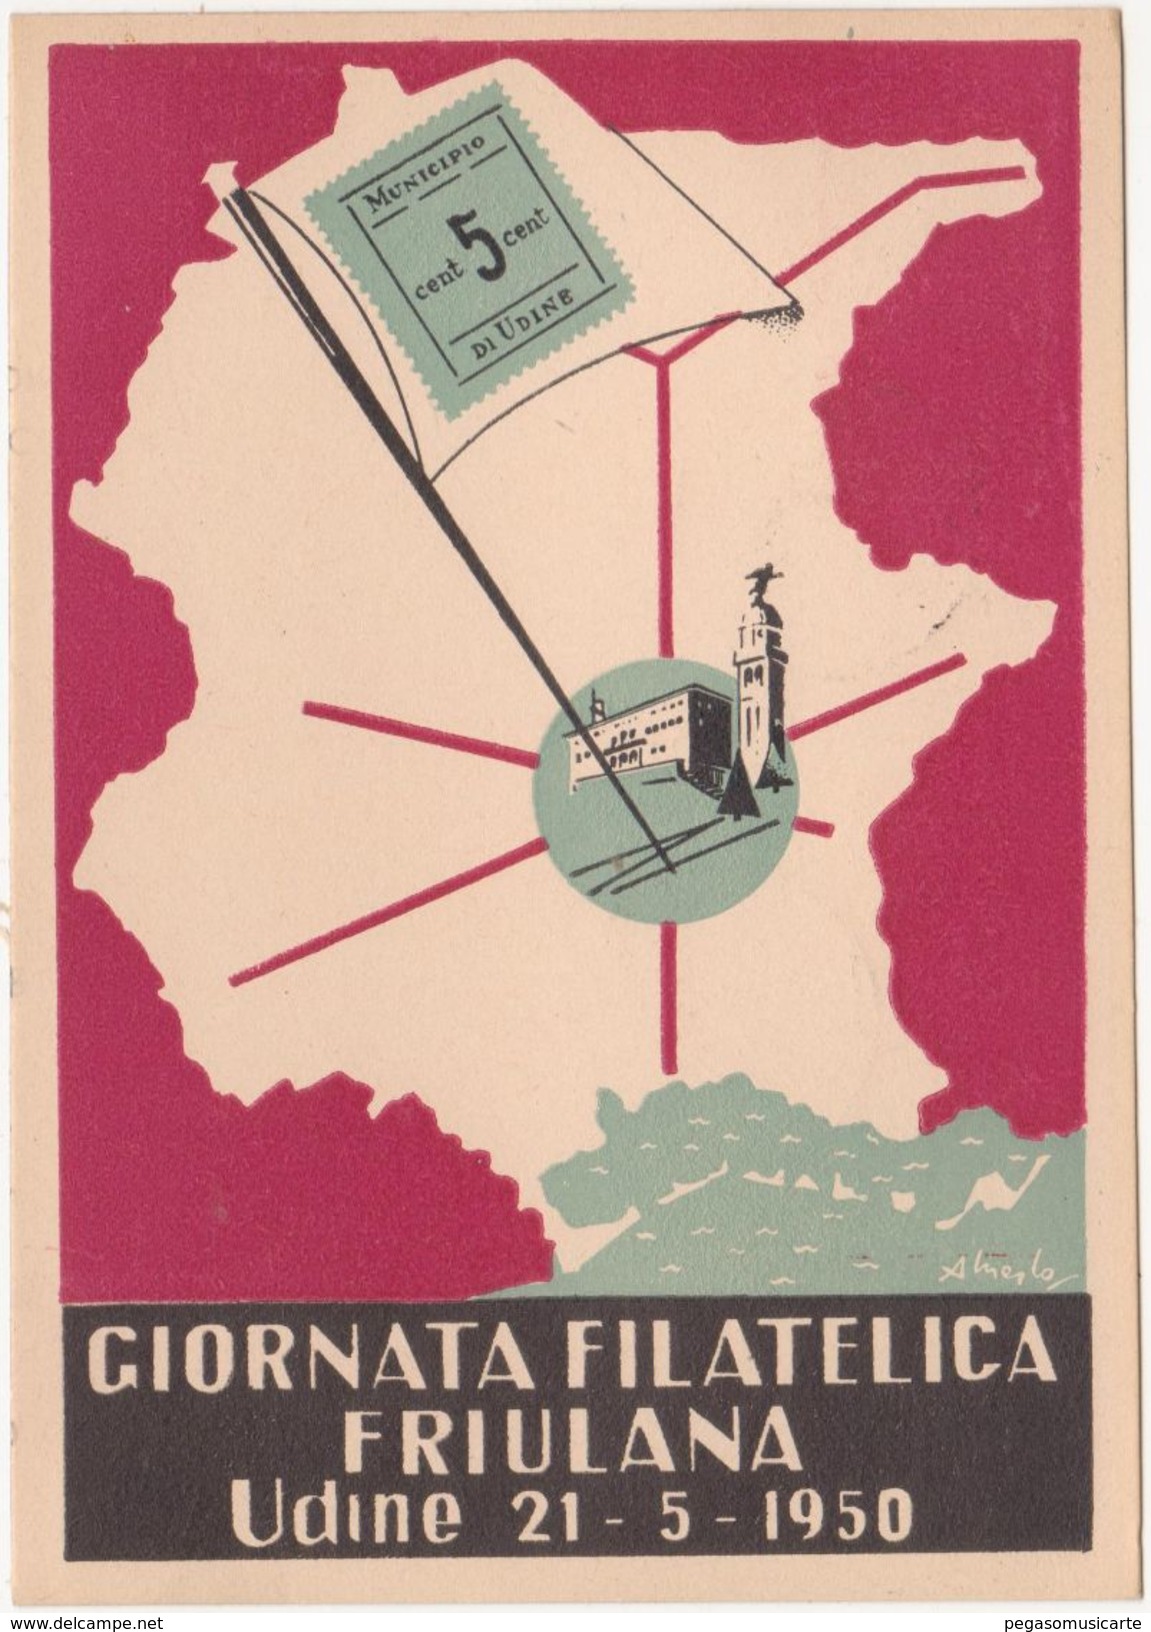 334 - GIORNATA FILATELICA FRIULANA 1950 - Borse E Saloni Del Collezionismo